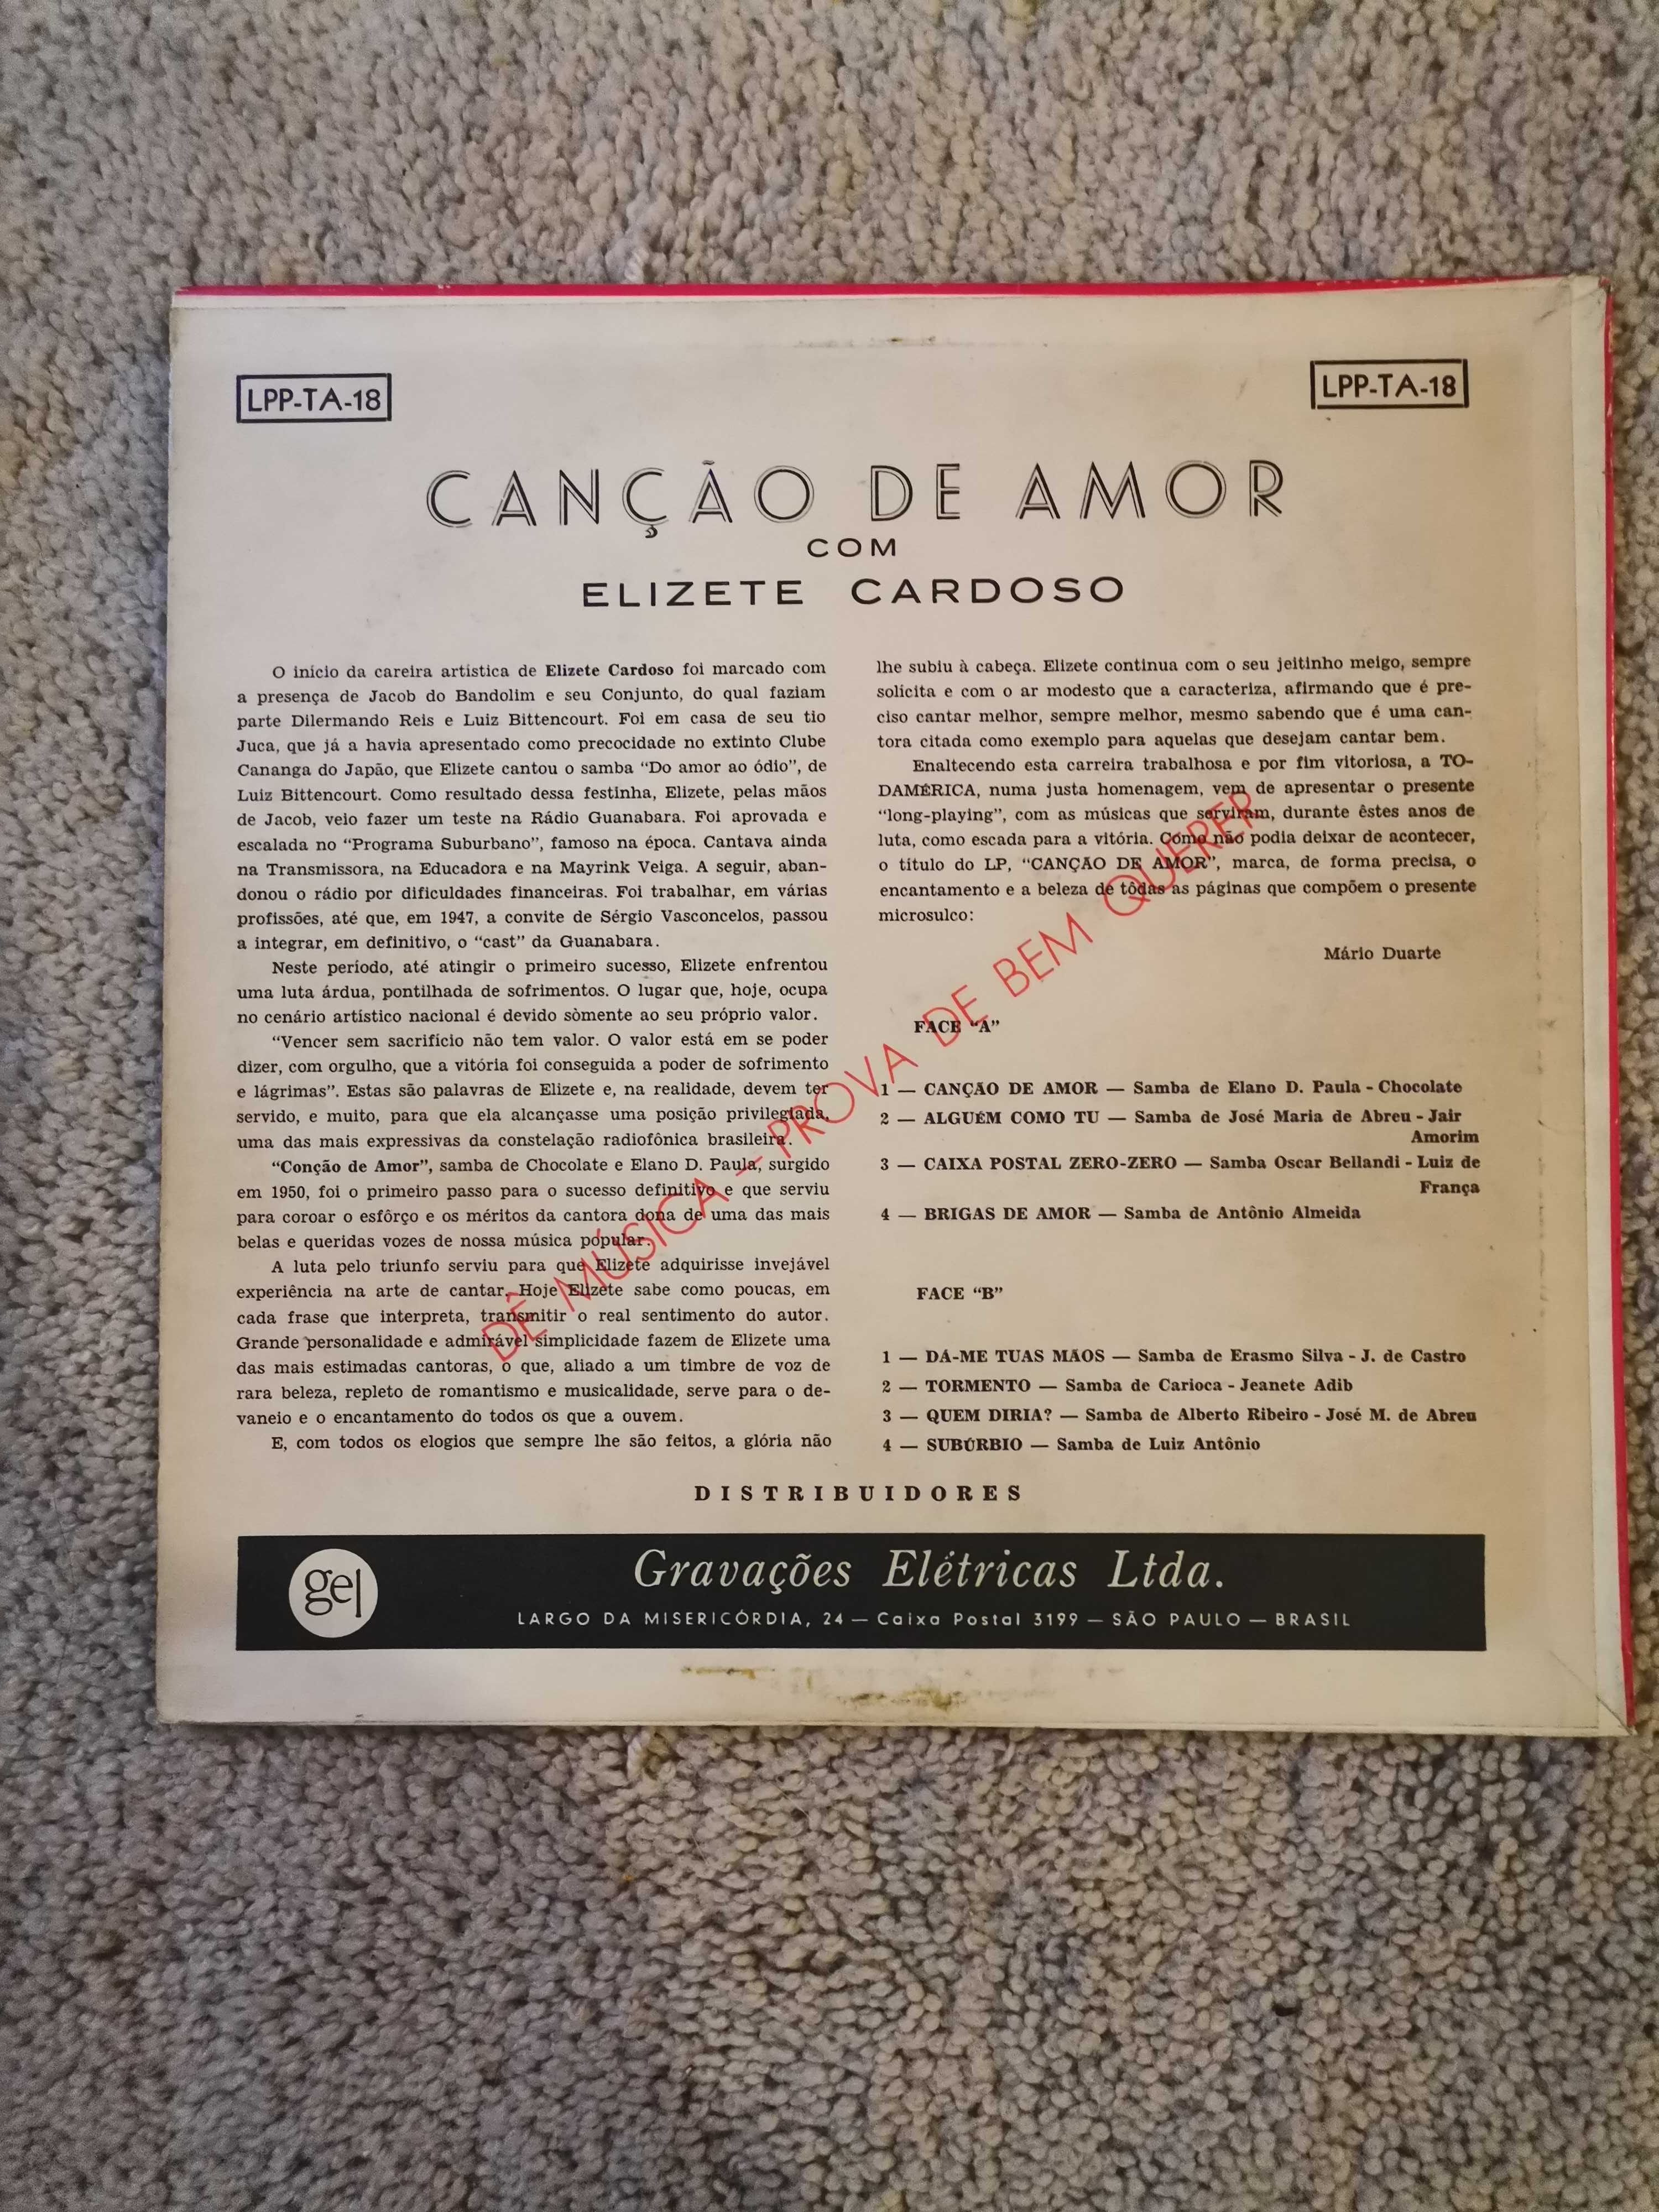 Elizete Cardoso - Canção de Amor LP